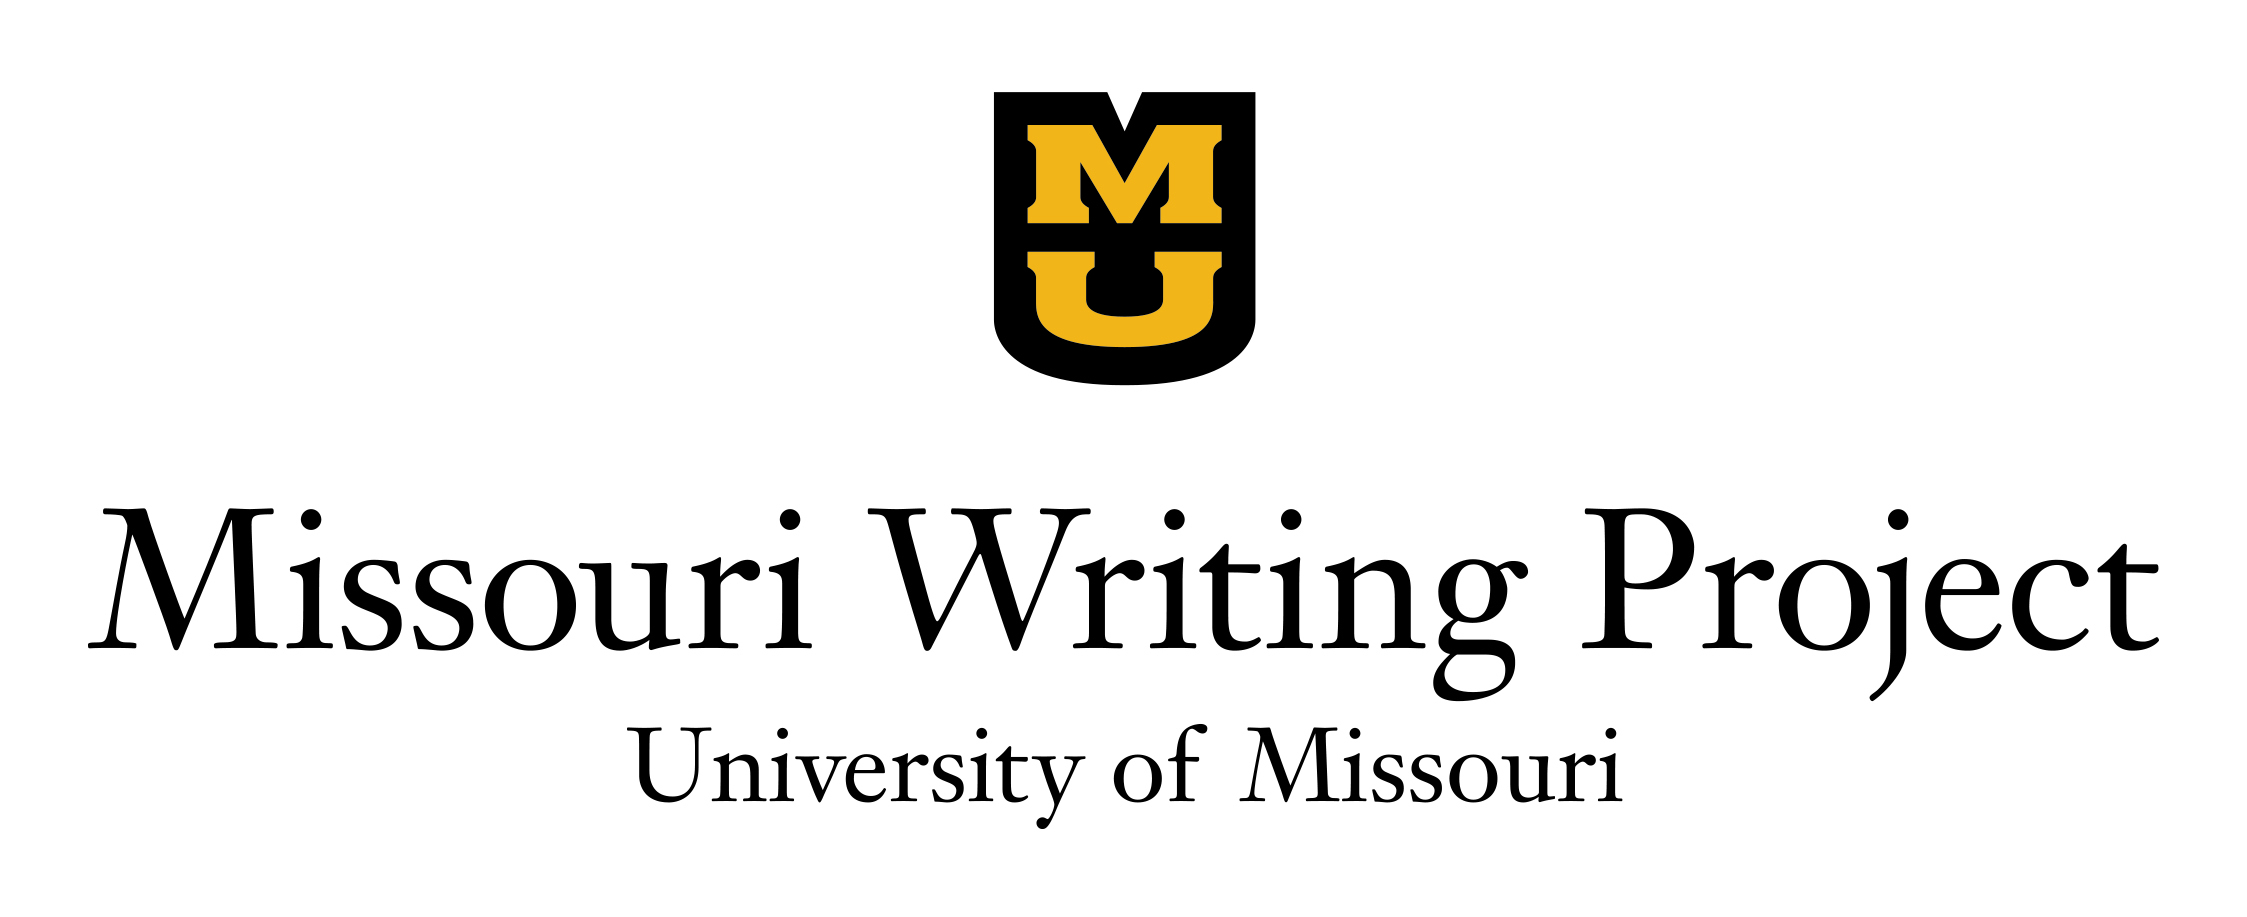 Missouri Writing Project